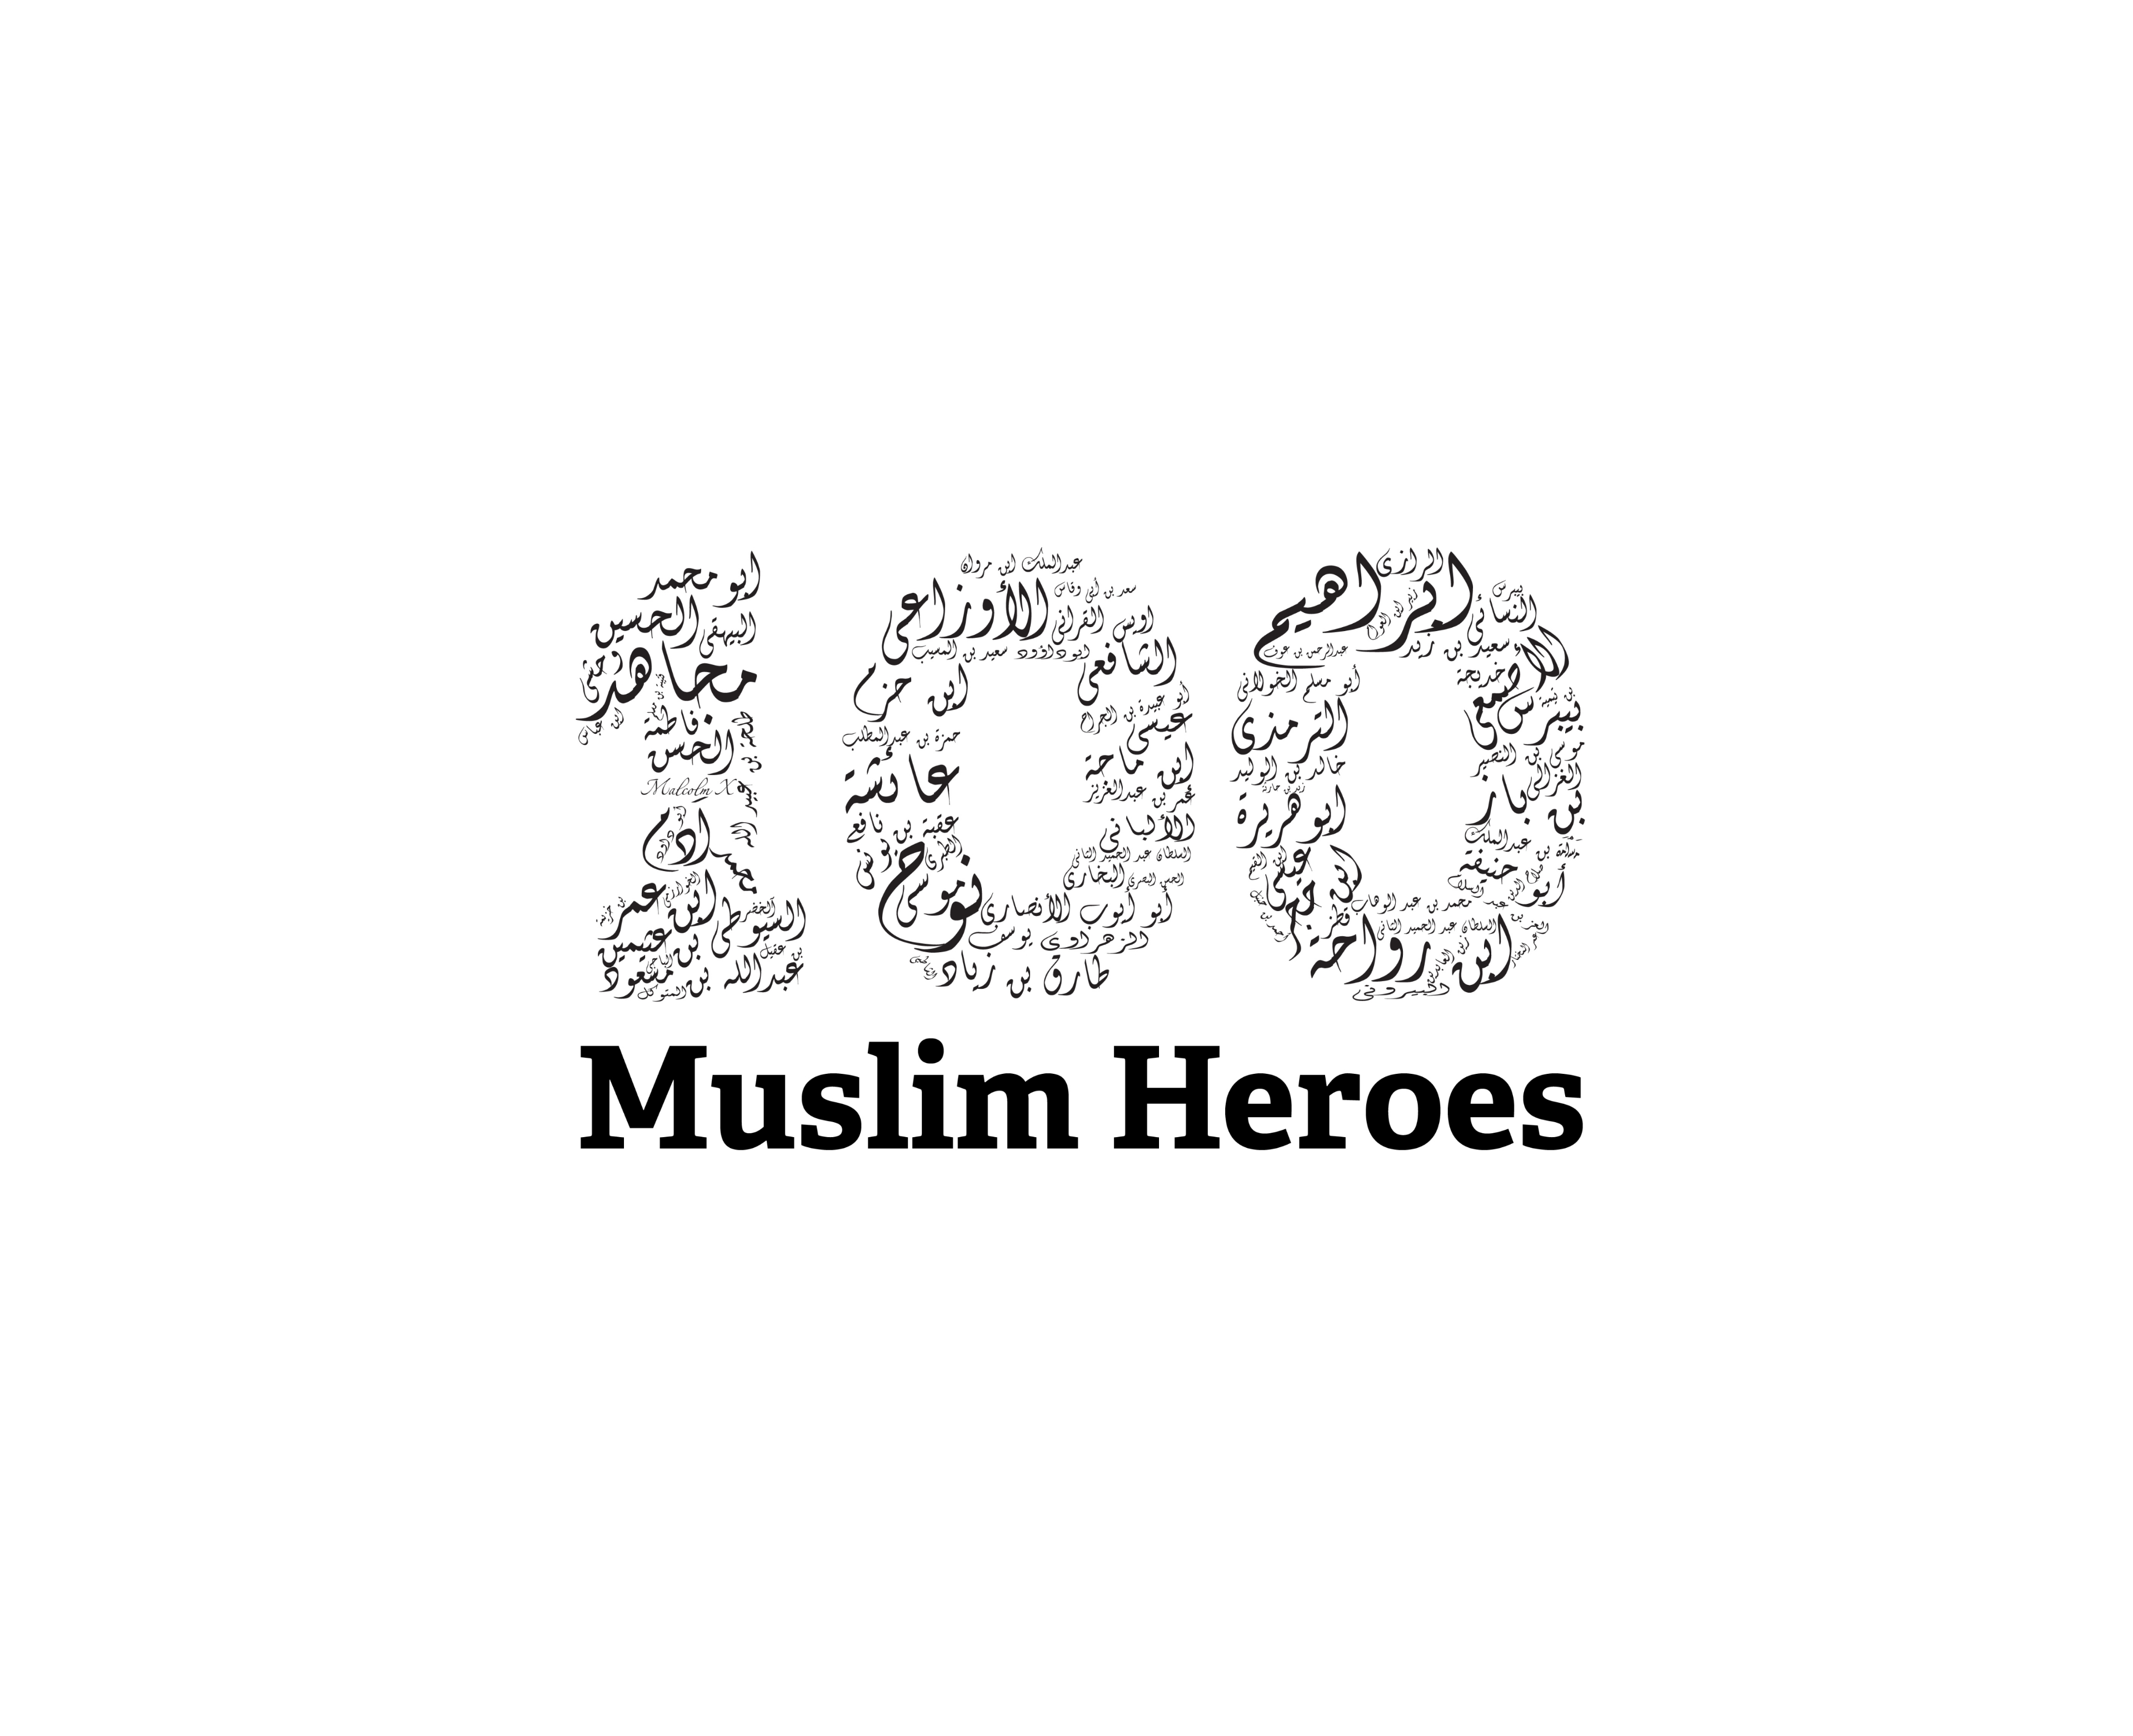 100 Muslim Heroes